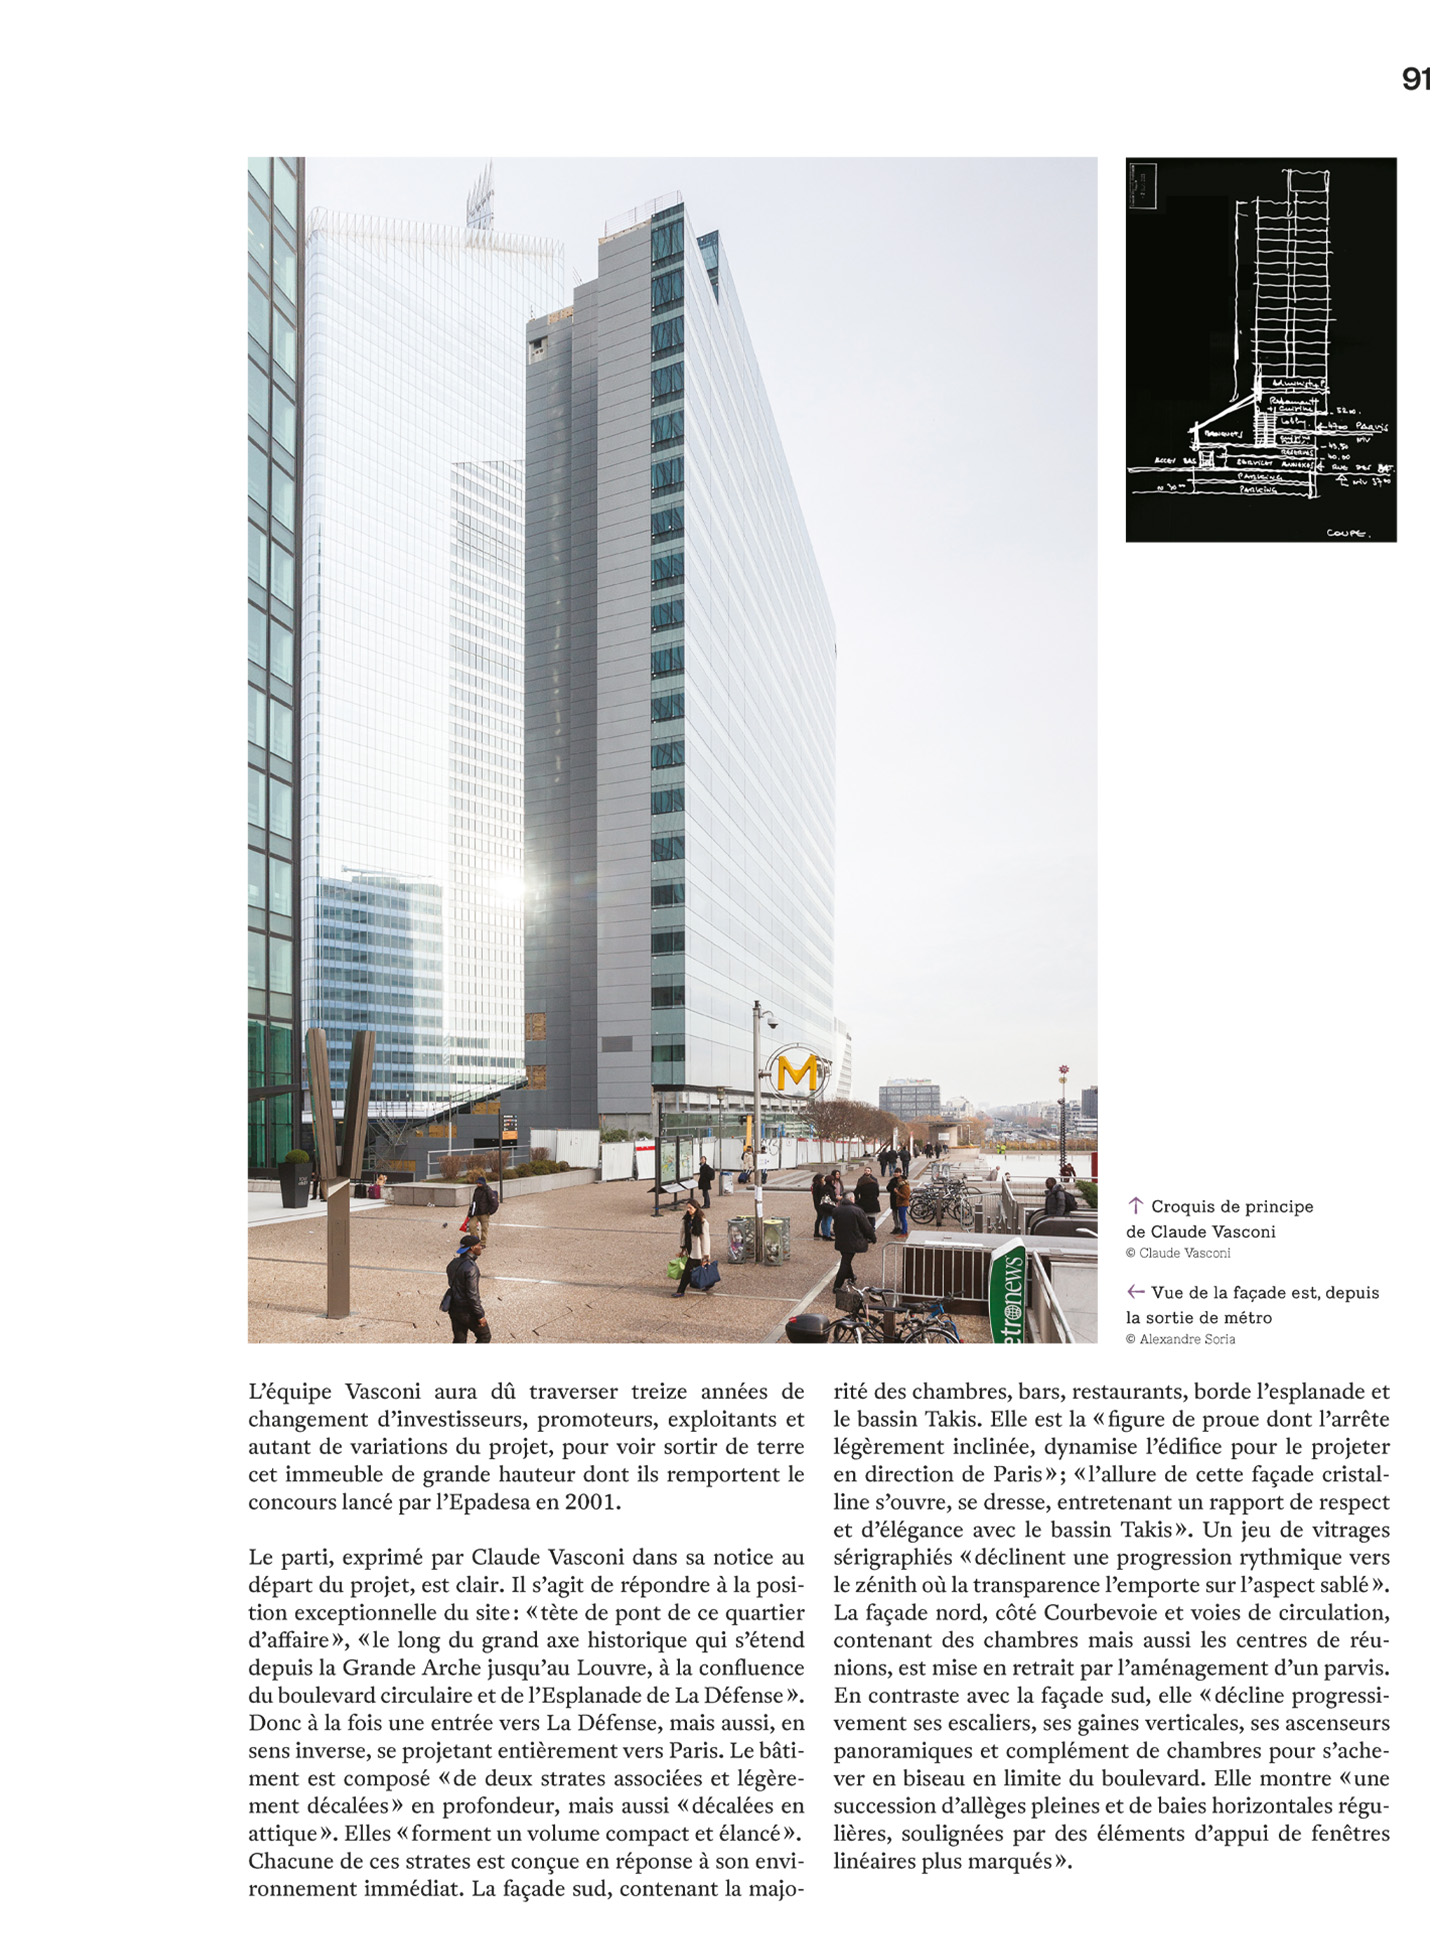 article sur l'hôtel Melia Paris La Défense, hotel de luxe à paris réalisé par le studio d'architecture d'intérieur jean-philippe nuel, dans le magazine archistorm